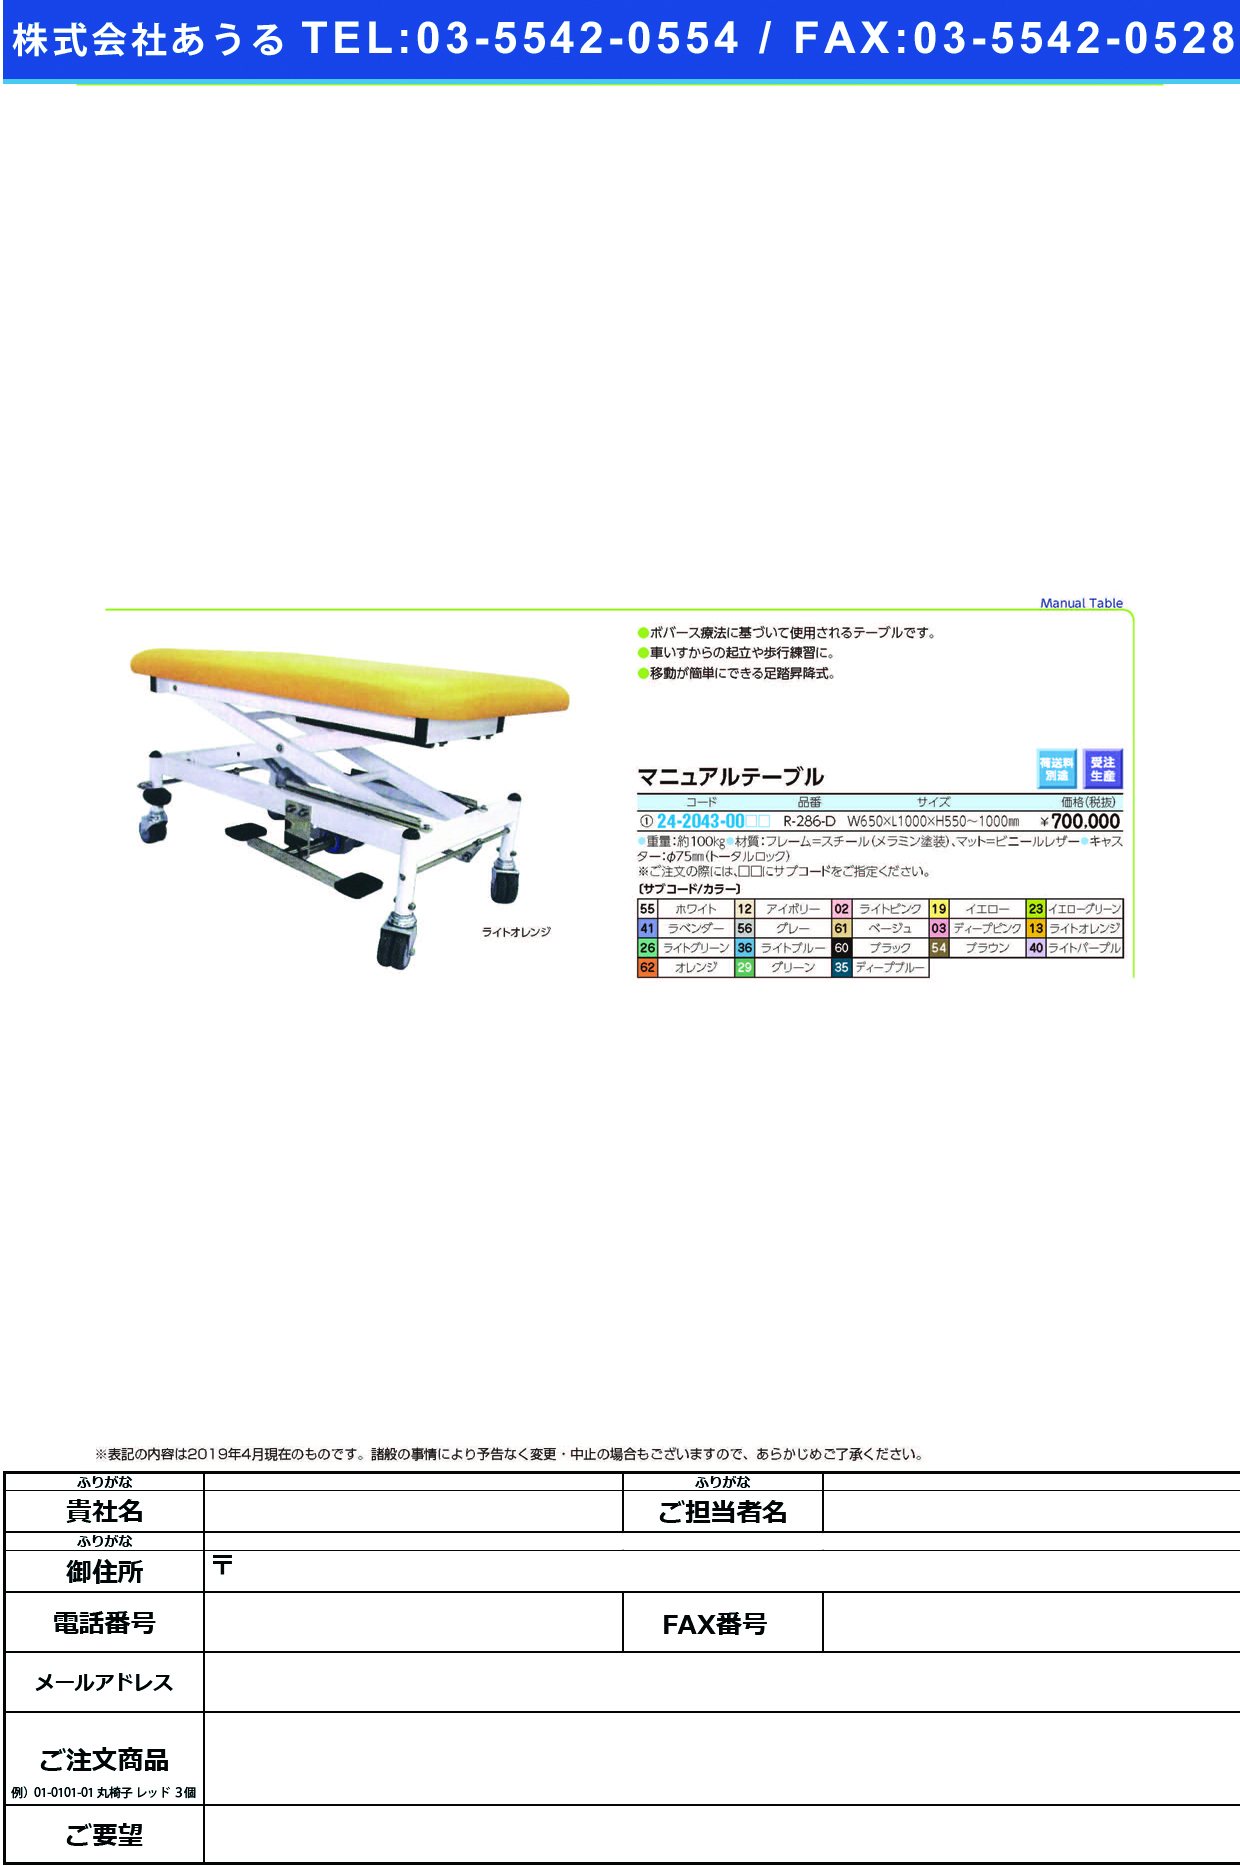 (24-2043-00)マニュアルテーブル R-286-D ﾏﾆｭｱﾙﾃｰﾌﾞﾙ ライトパープル【1台単位】【2019年カタログ商品】